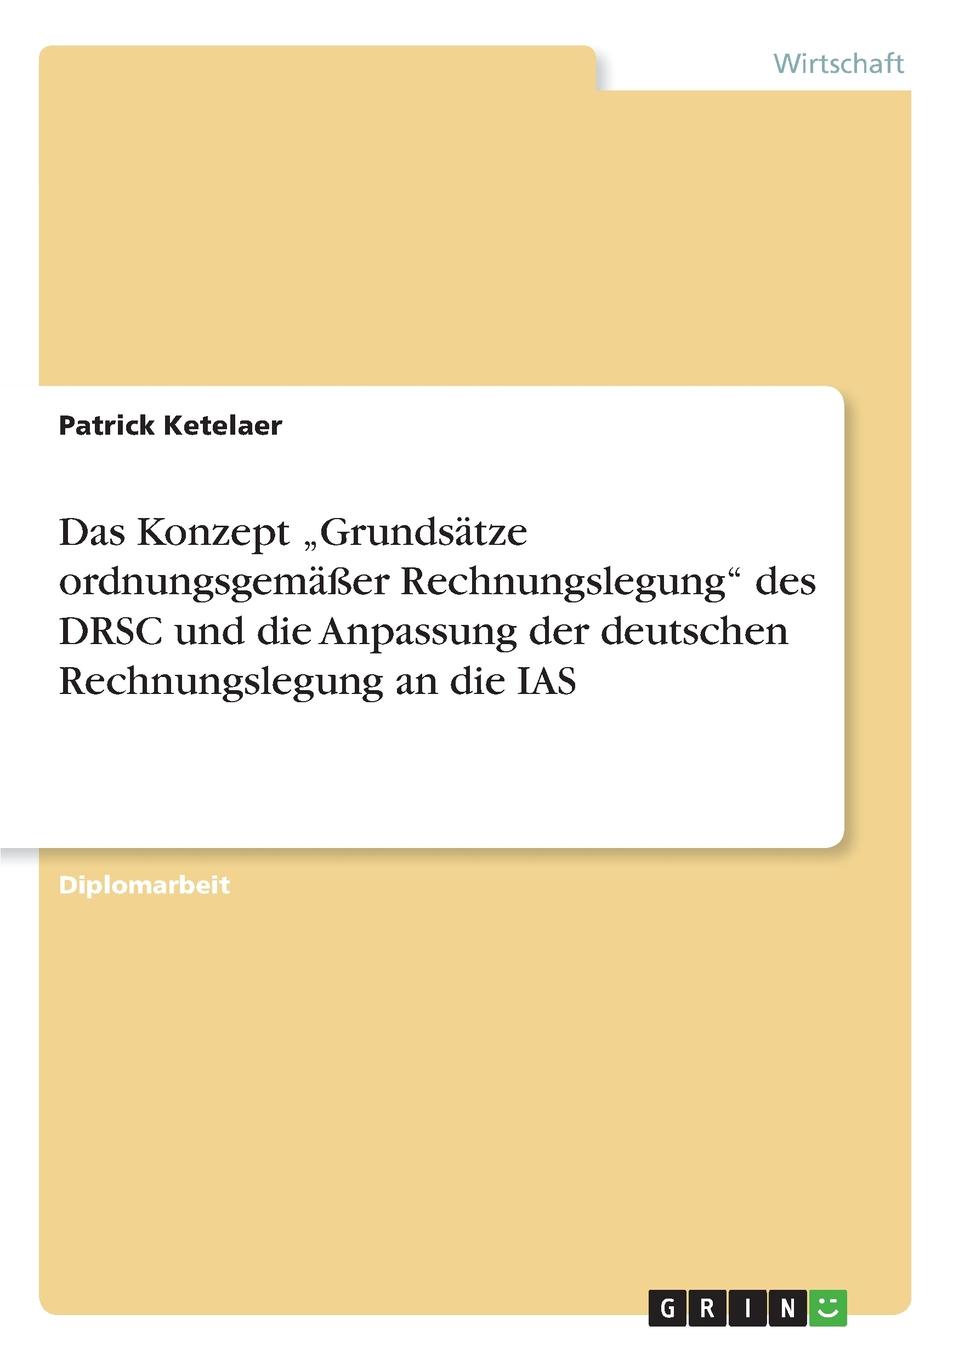 фото Das Konzept .Grundsatze ordnungsgemasser Rechnungslegung" des DRSC und die Anpassung der deutschen Rechnungslegung an die IAS